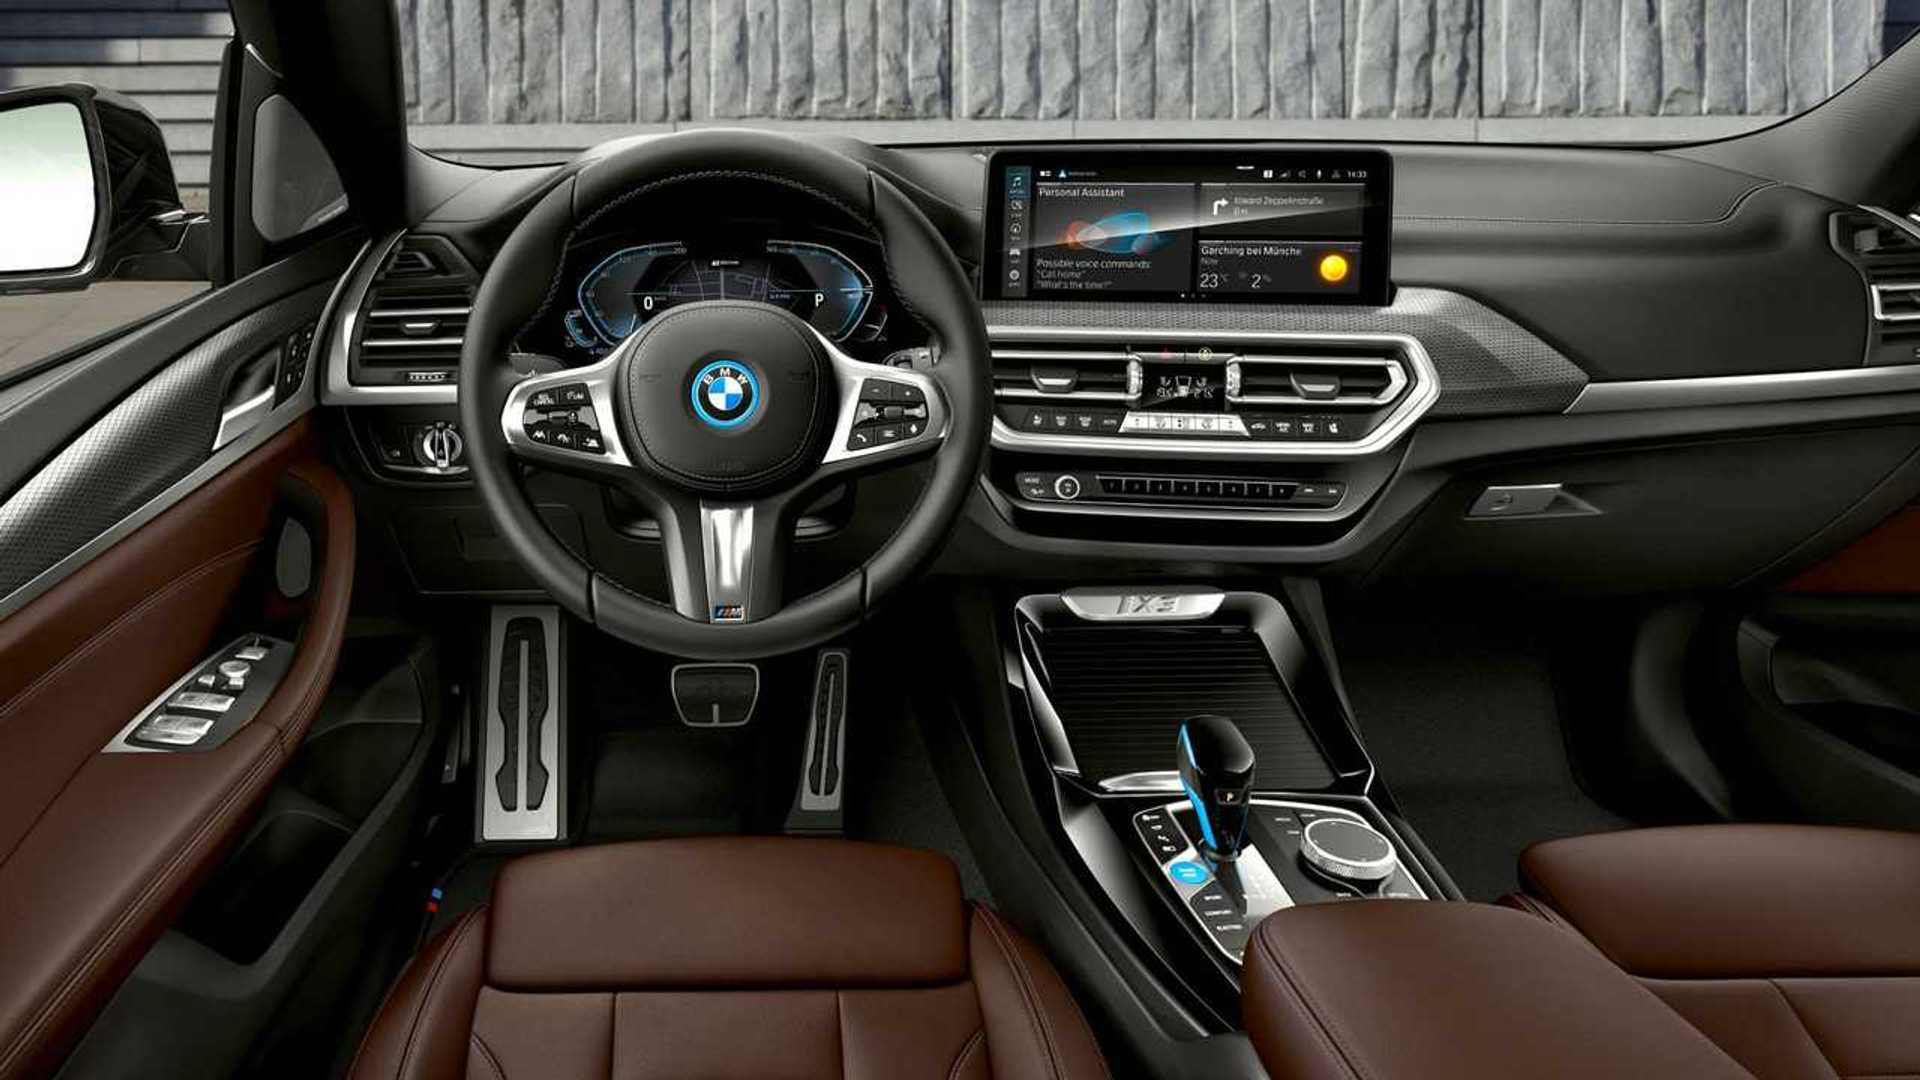 Parte dos bancos, painel e volante do BMW iX3 2024 nas cores preta com detalhes em marrom